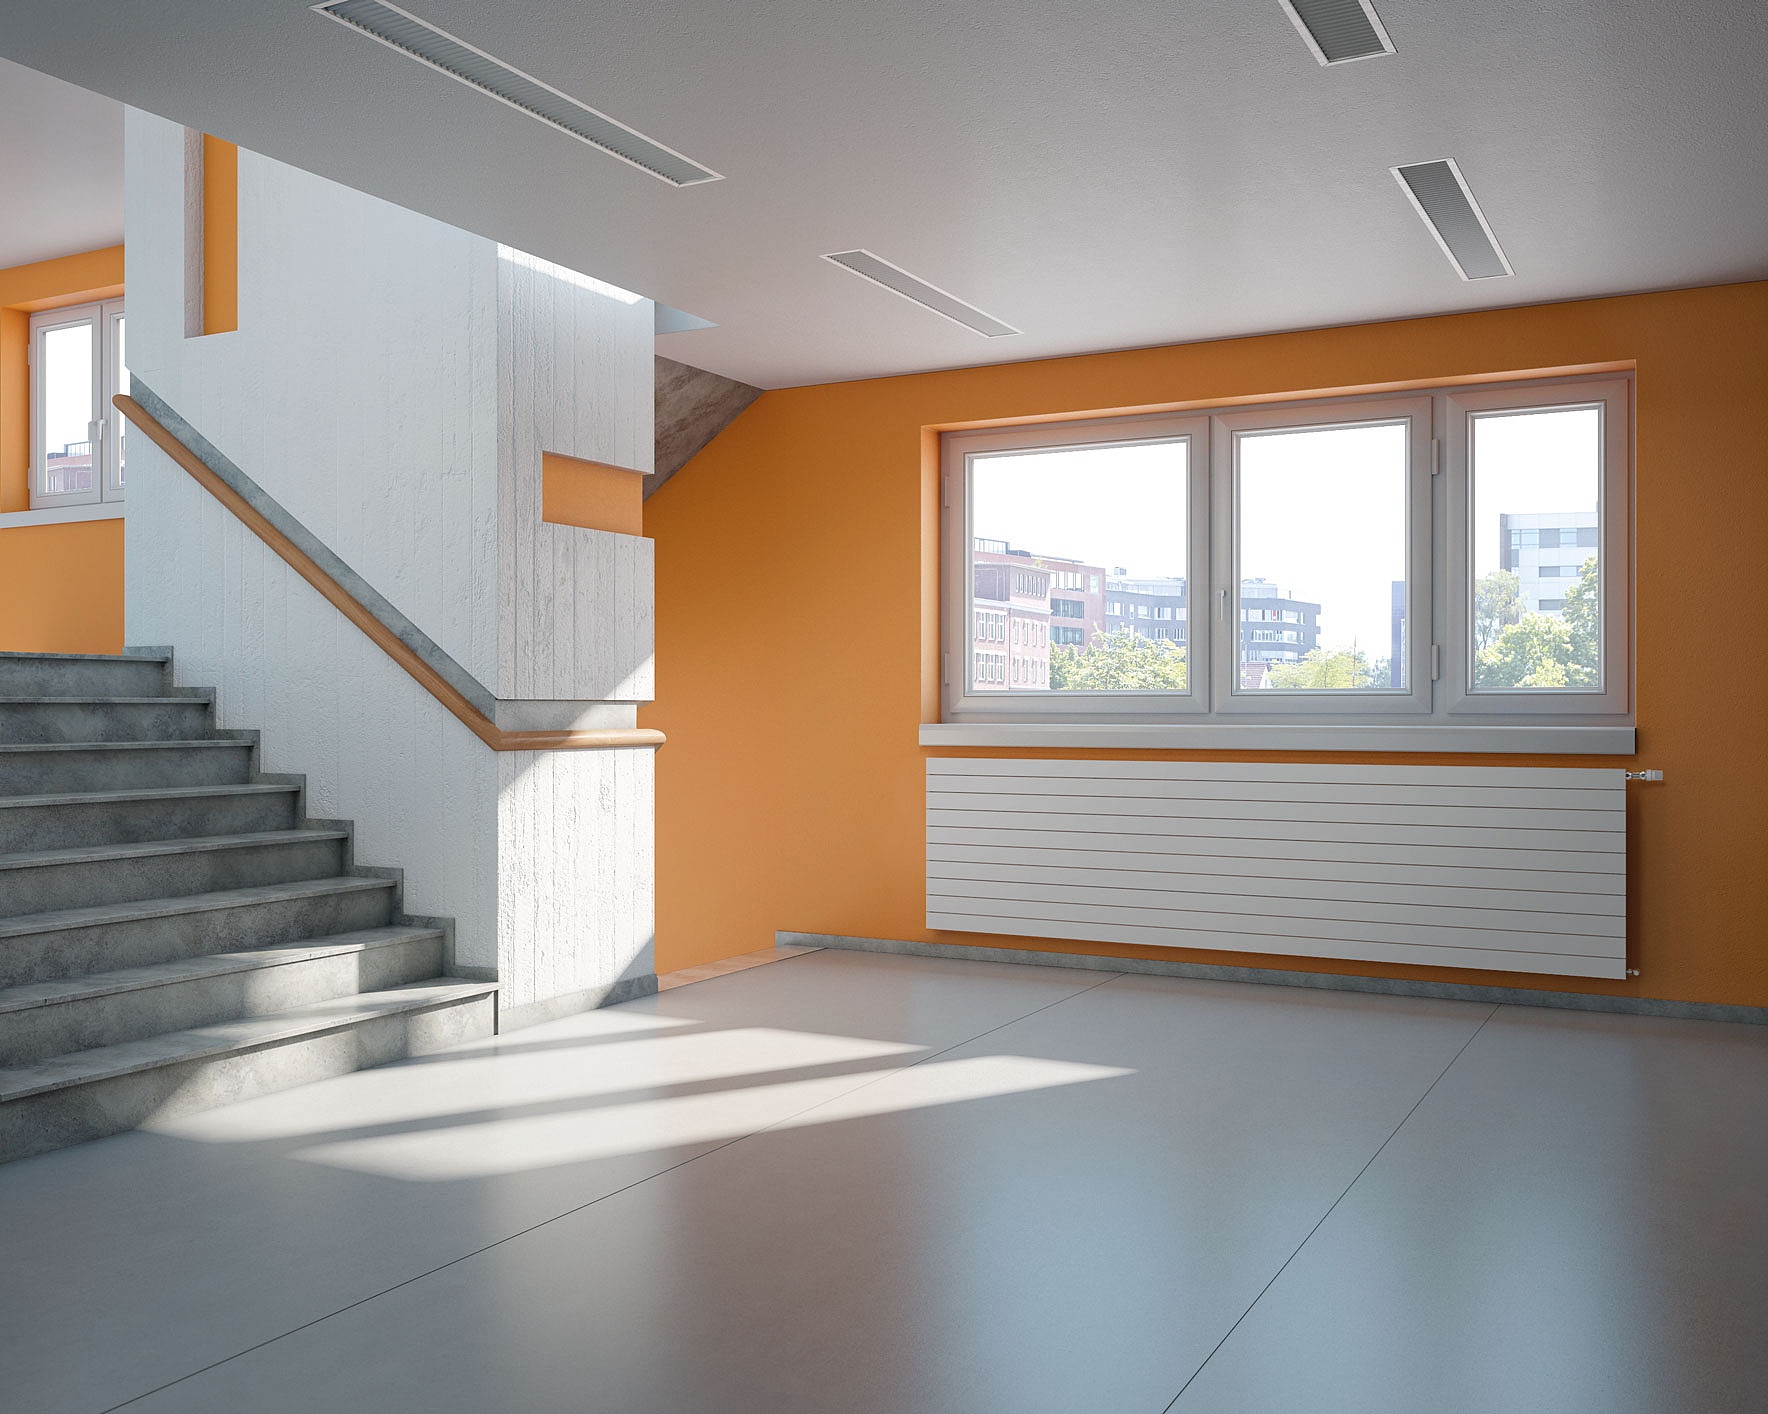 Decotherm Plus Heizkörper auch geeignet für größere Räume und Hallen